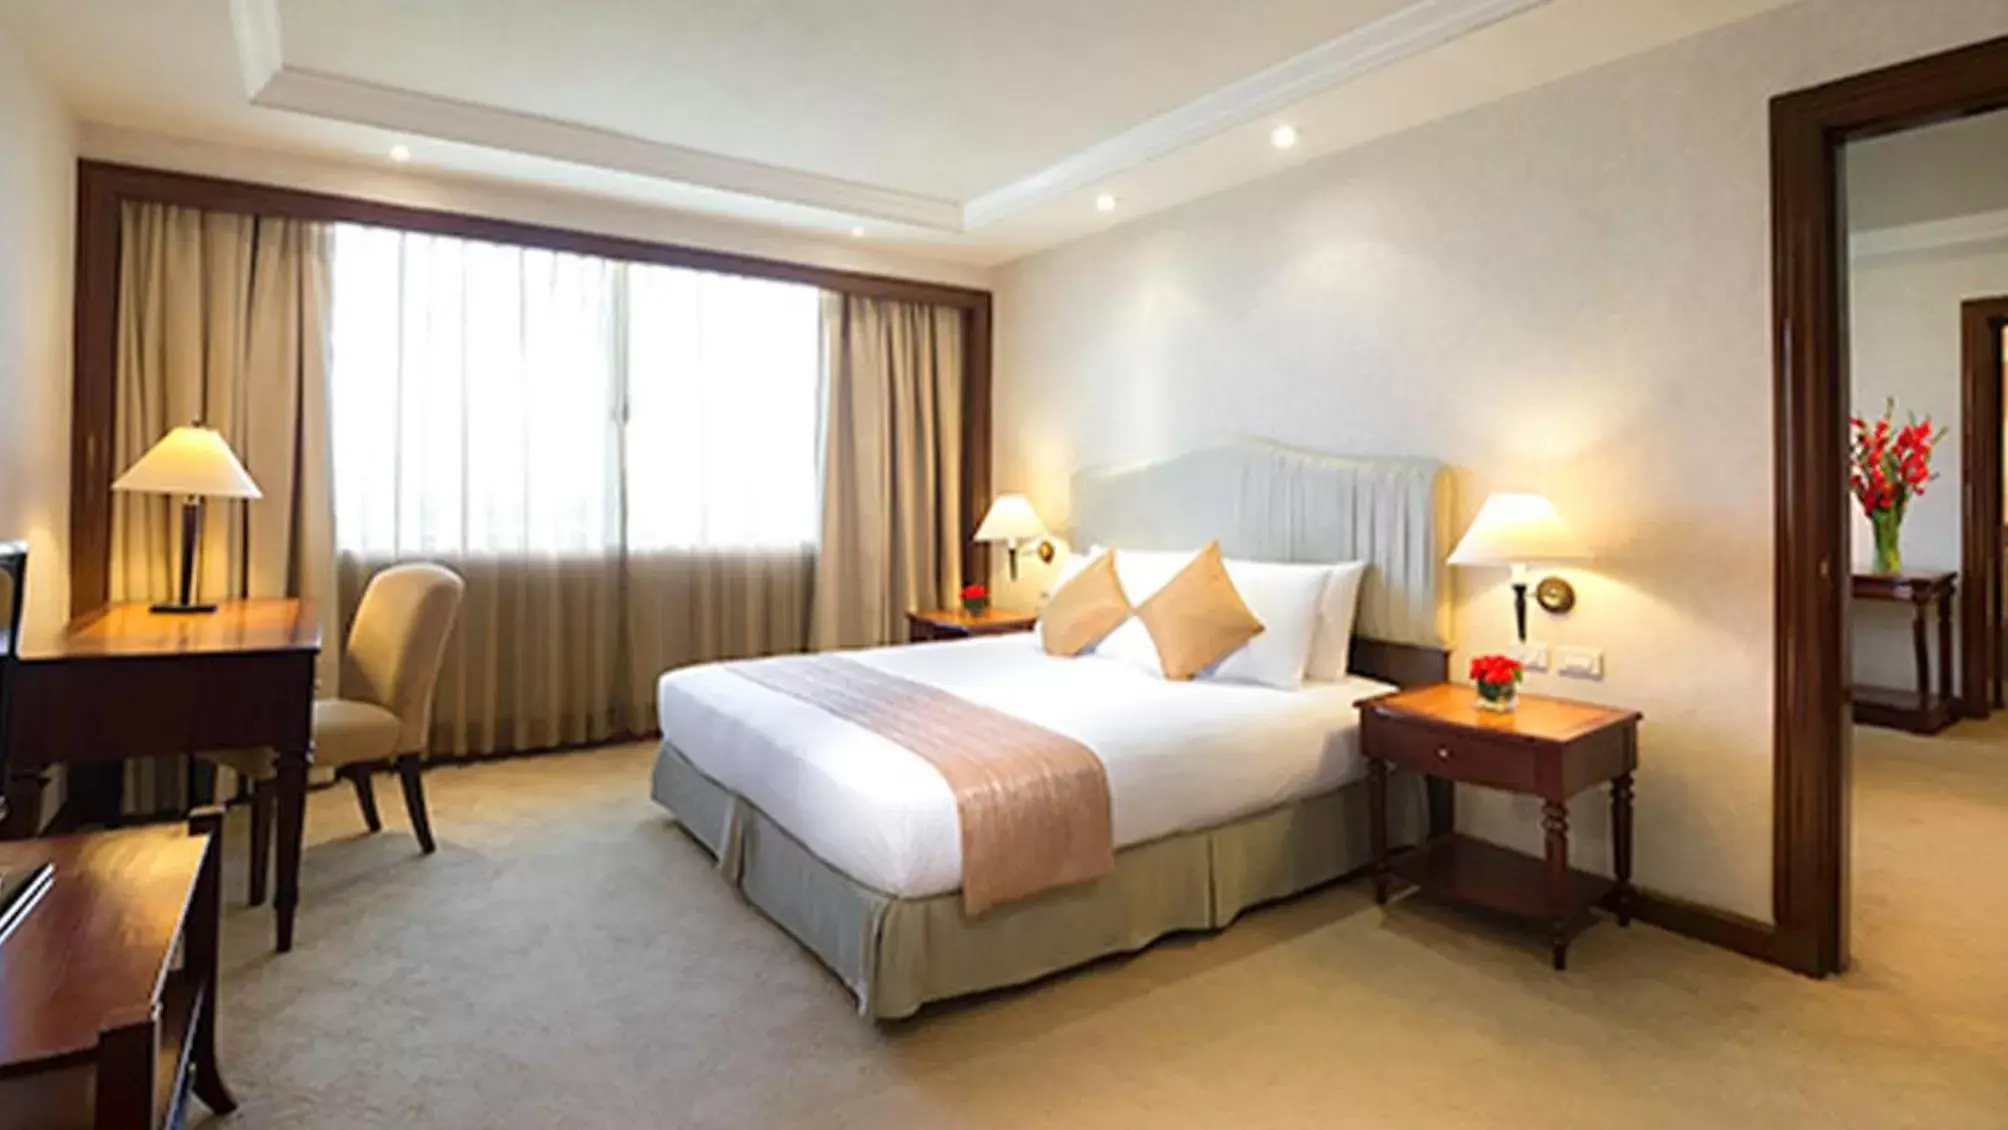 Bedroom, Bed in Marco Polo Plaza Cebu